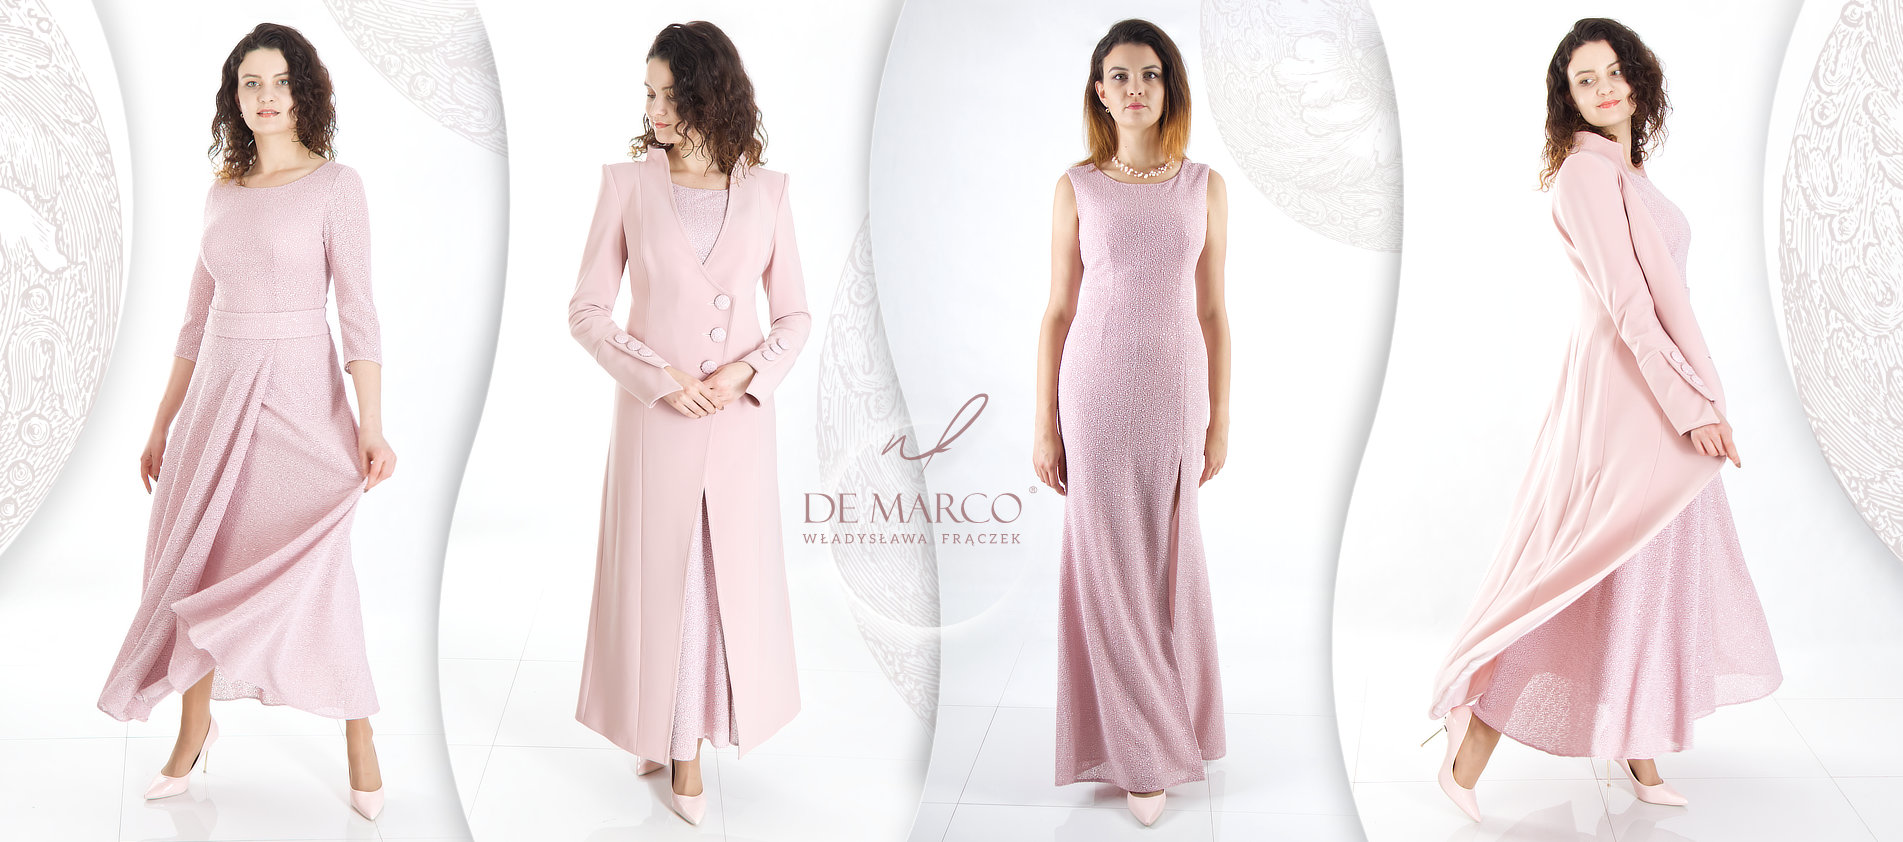  Komplet sukienka z płaszczem Elegancki płaszczyk do sukienki na wesele Lekki płaszczyk do sukienki wieczorowej Elegancki płaszcz do sukienki polski producent De Marco